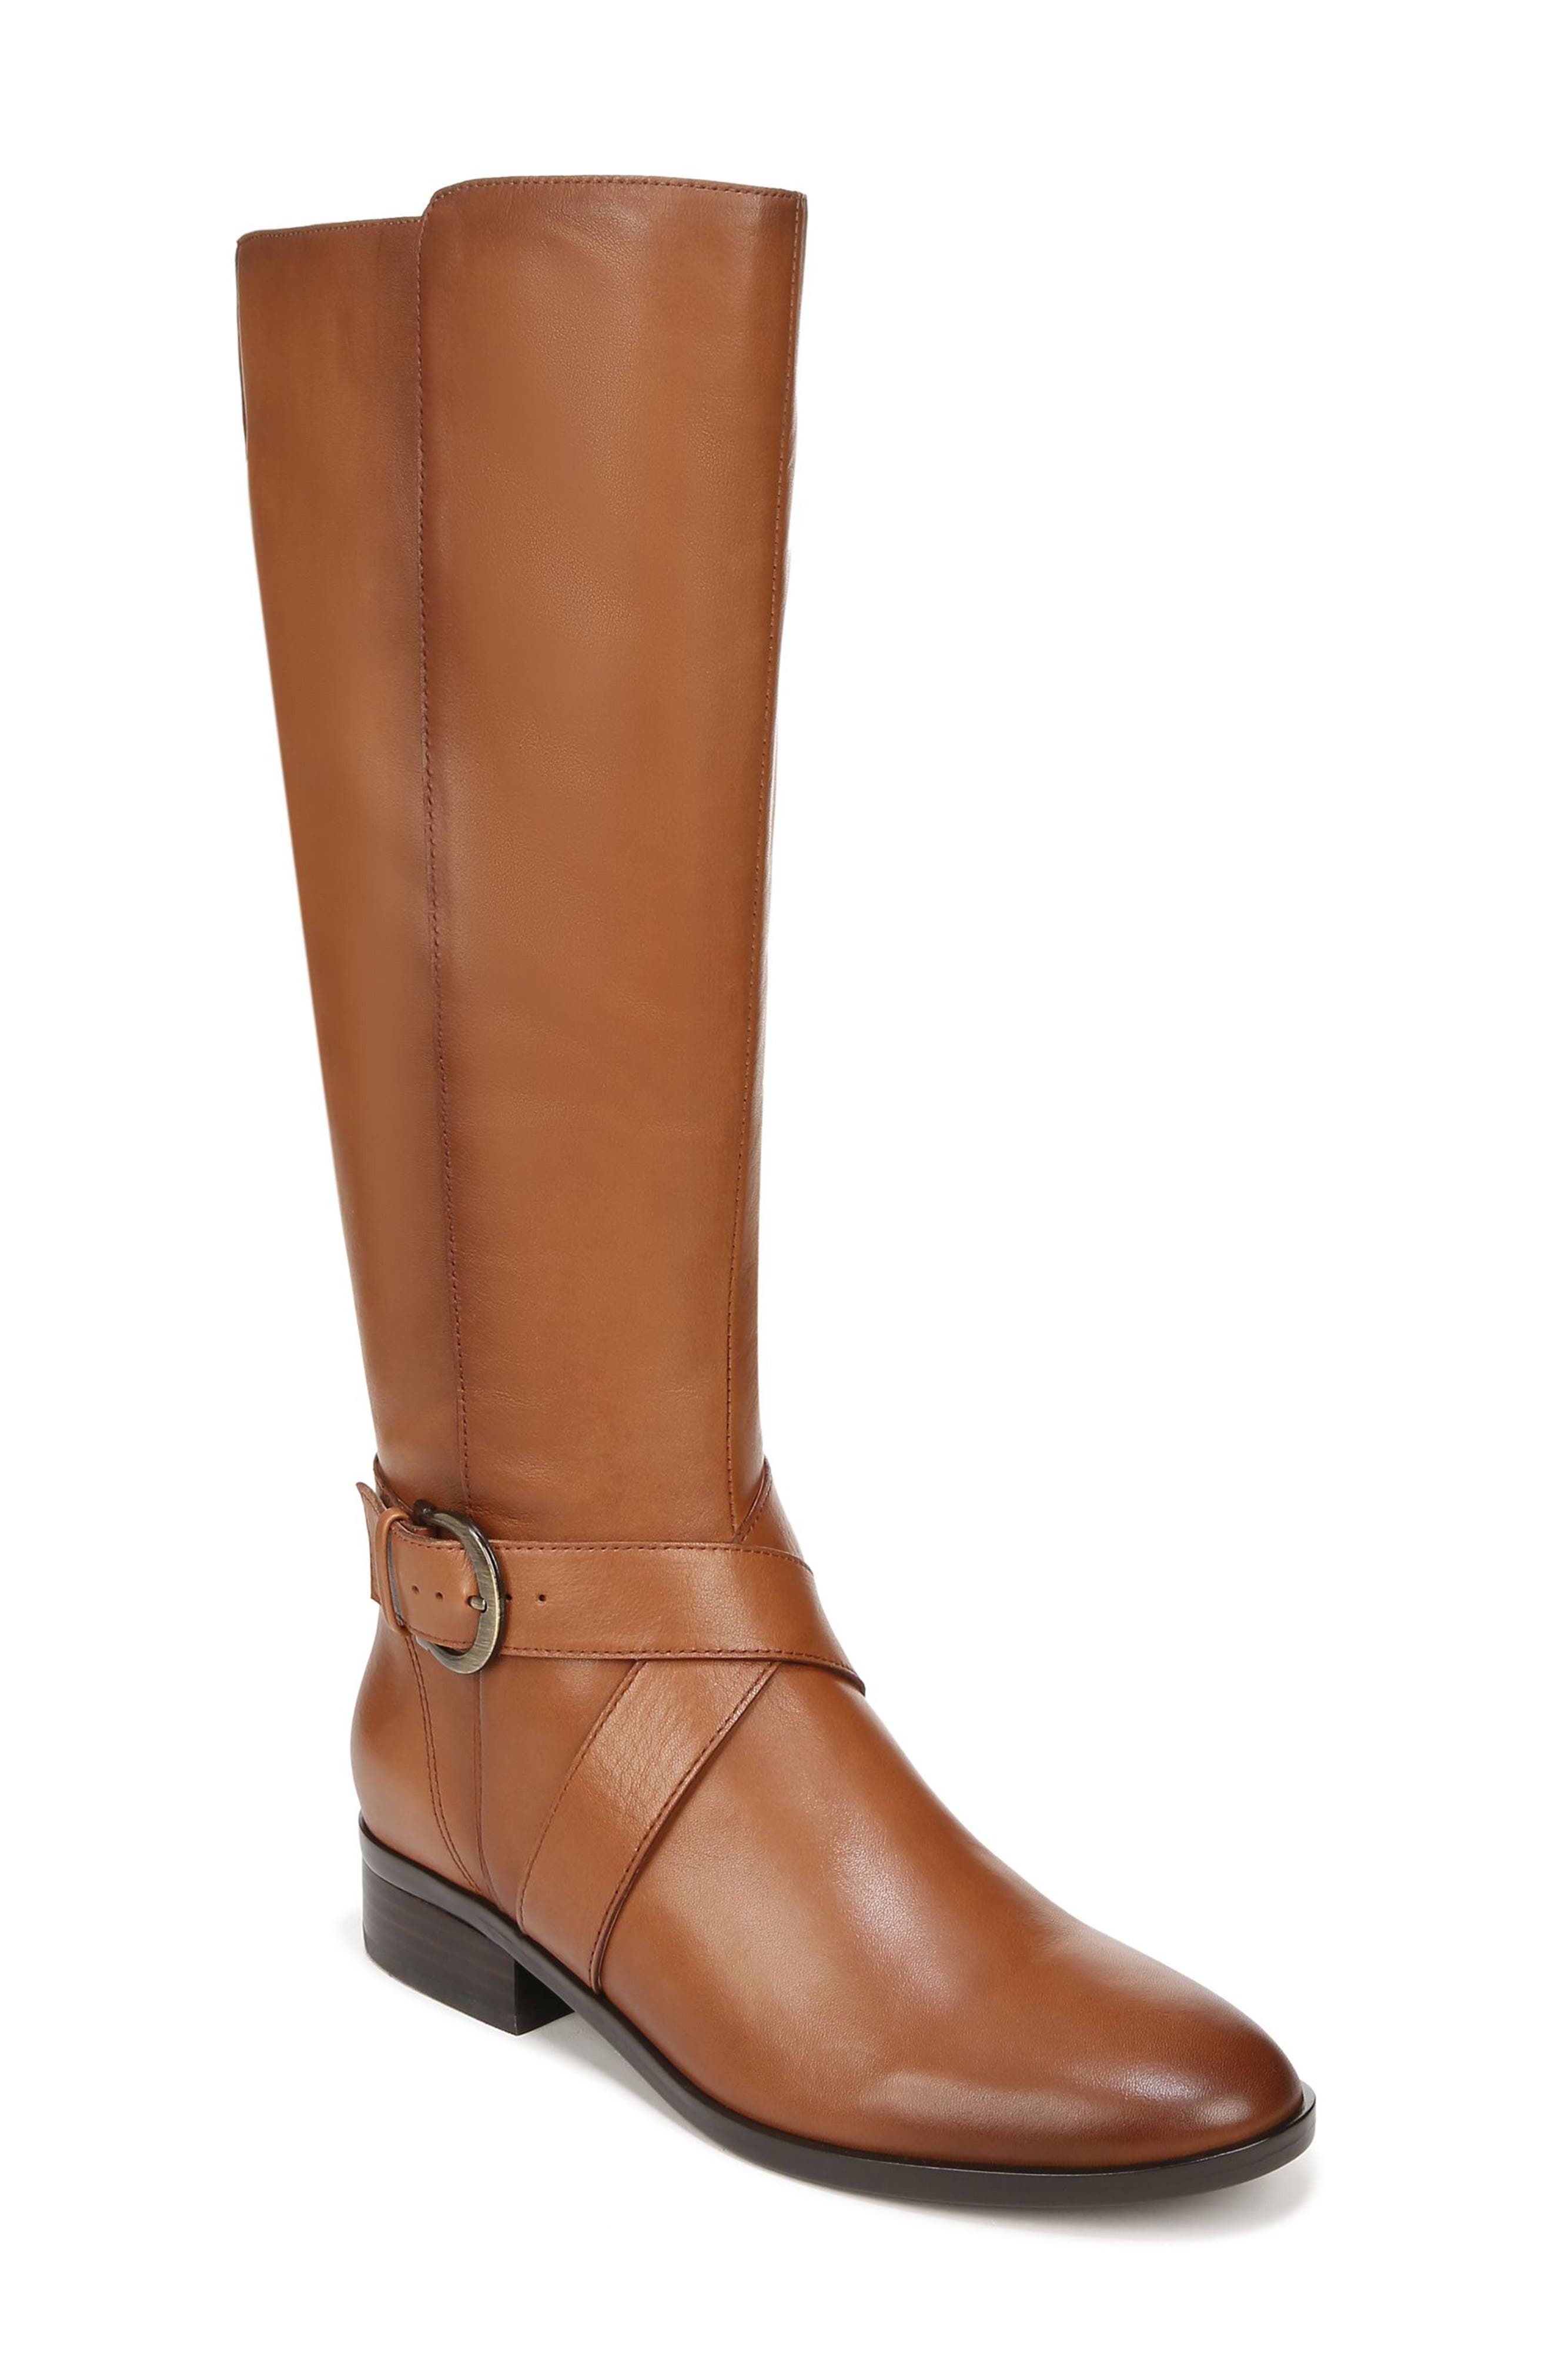 wide calf brown dress boots